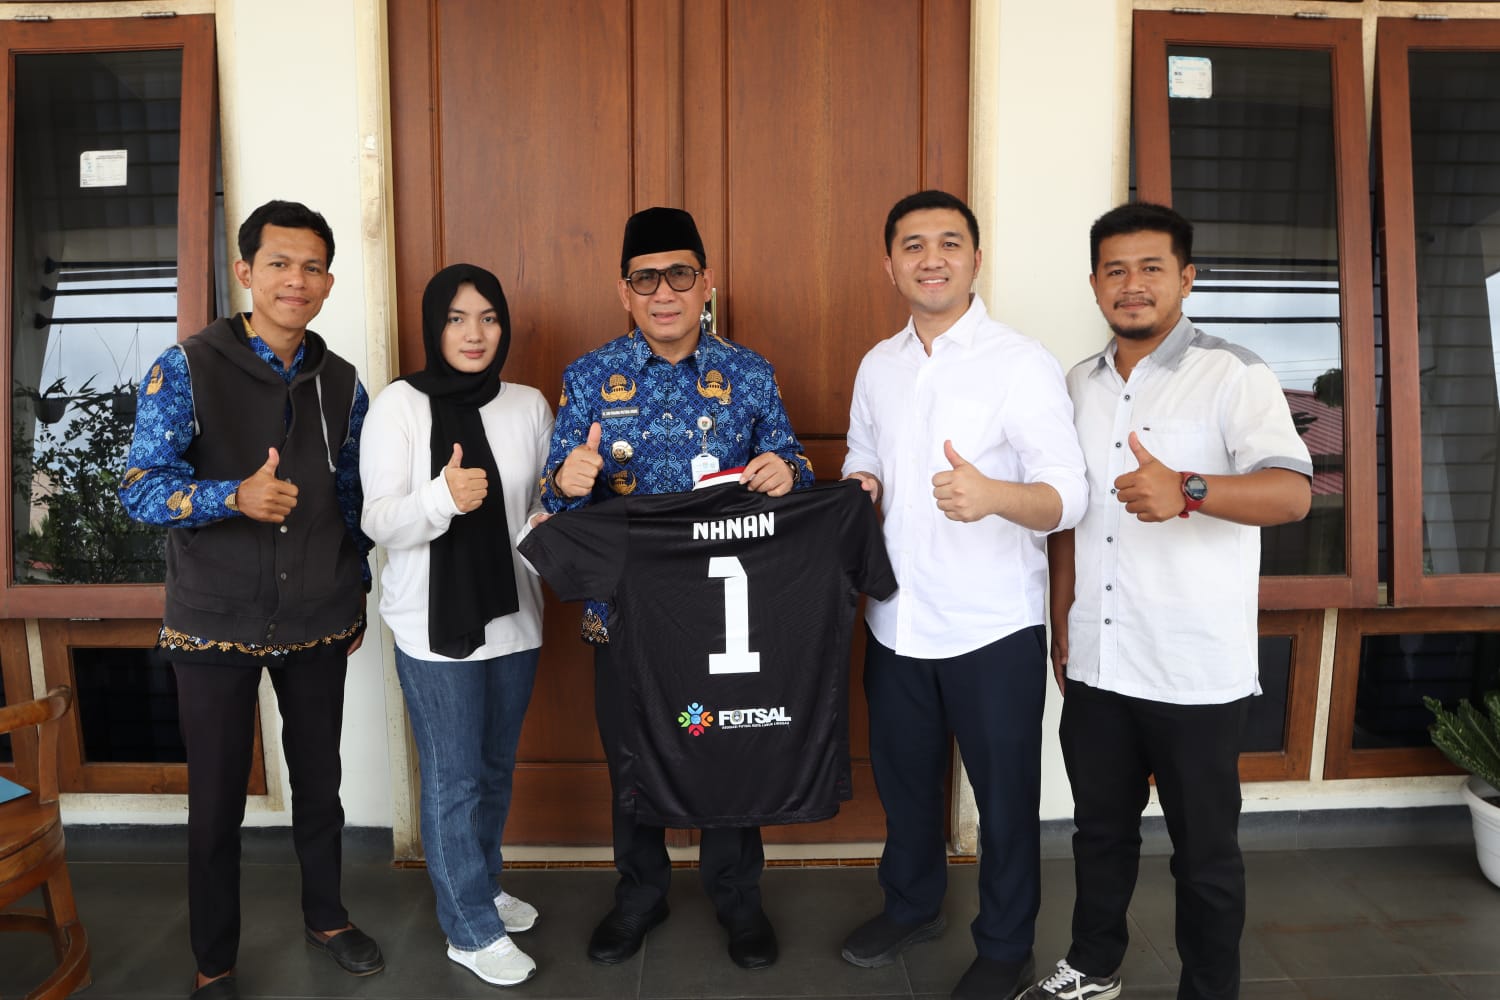   Wali Kota Lubuklinggau Dukung Penuh Afkot Lubuklinggau Menuju Futsal Berprestasi